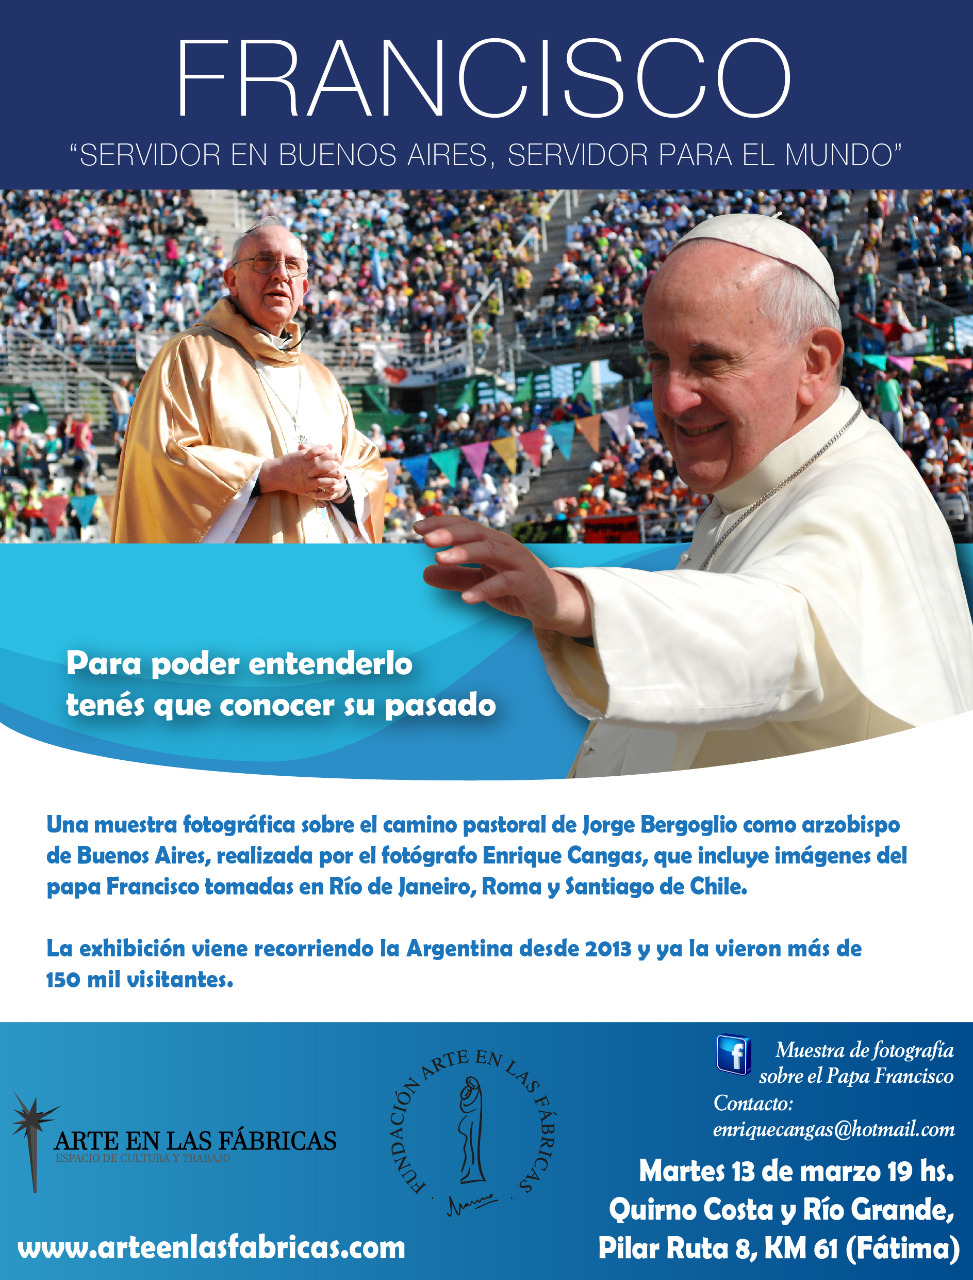 Muestra fotográfica: Papa Francisco 13 de marzo 19 hs en Pilar